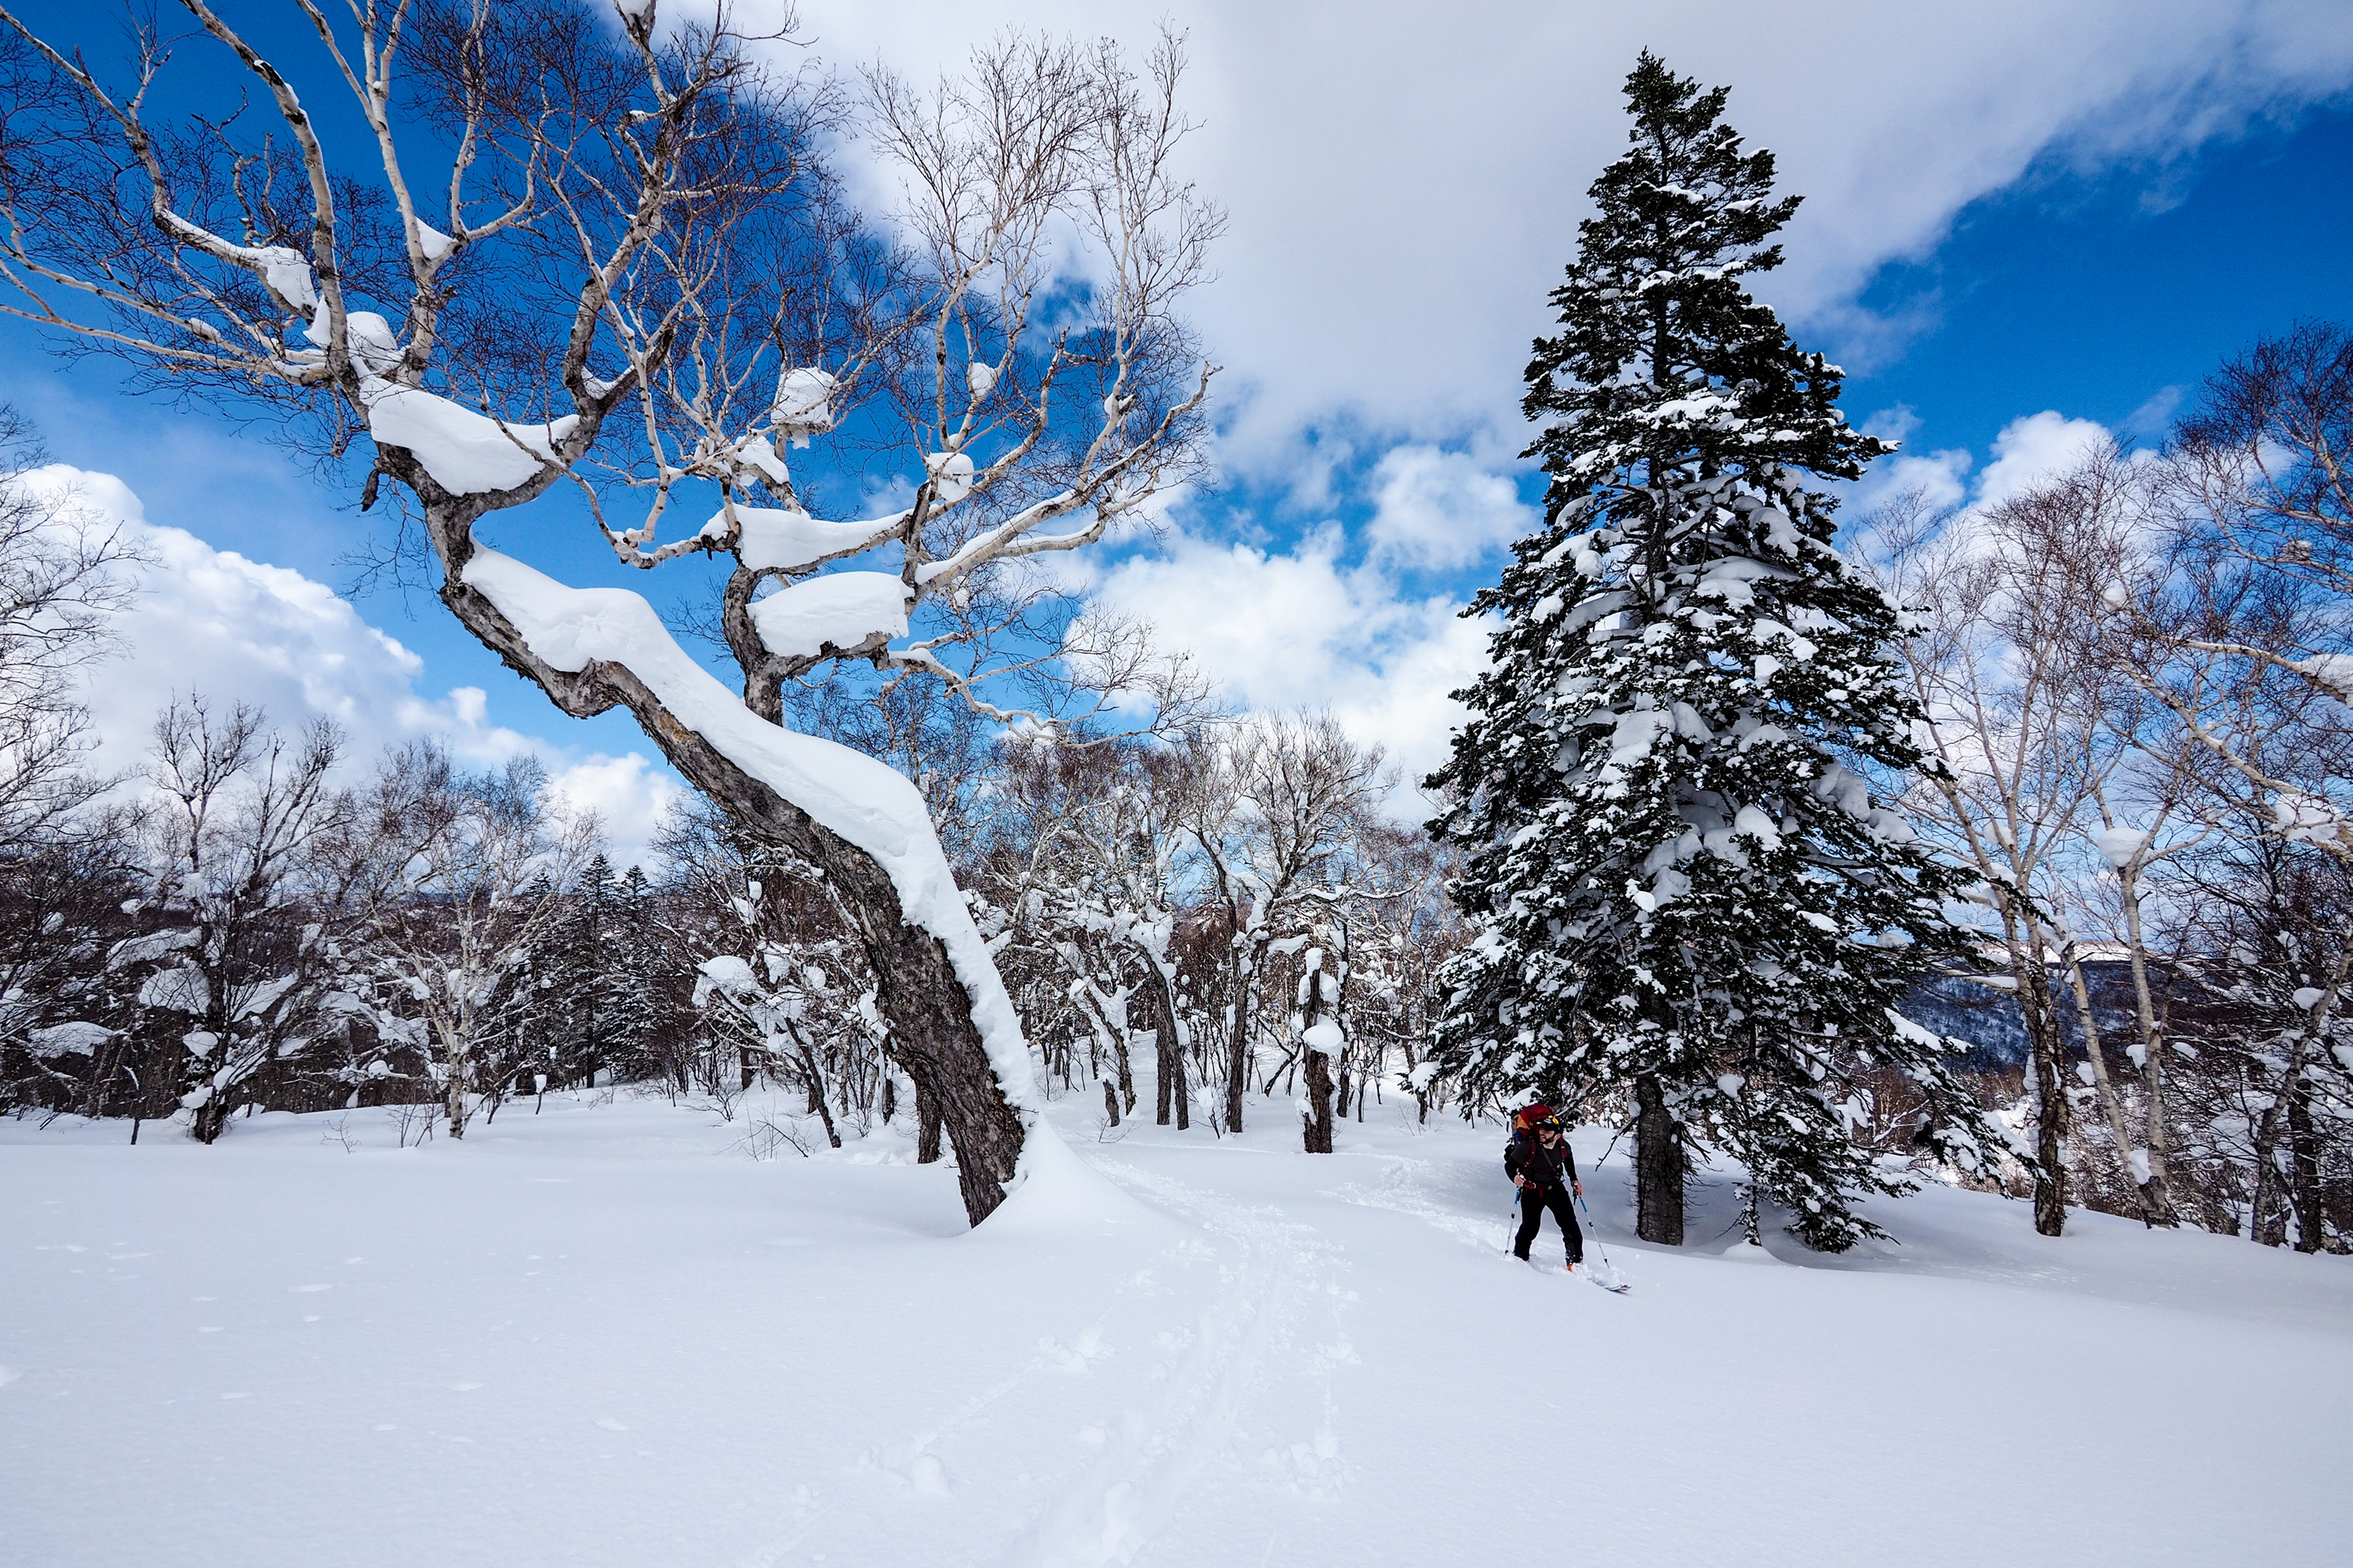 Скачать обои бесплатно Зима, Снег, Лес, Виды Спорта, Катание На Лыжах картинка на рабочий стол ПК